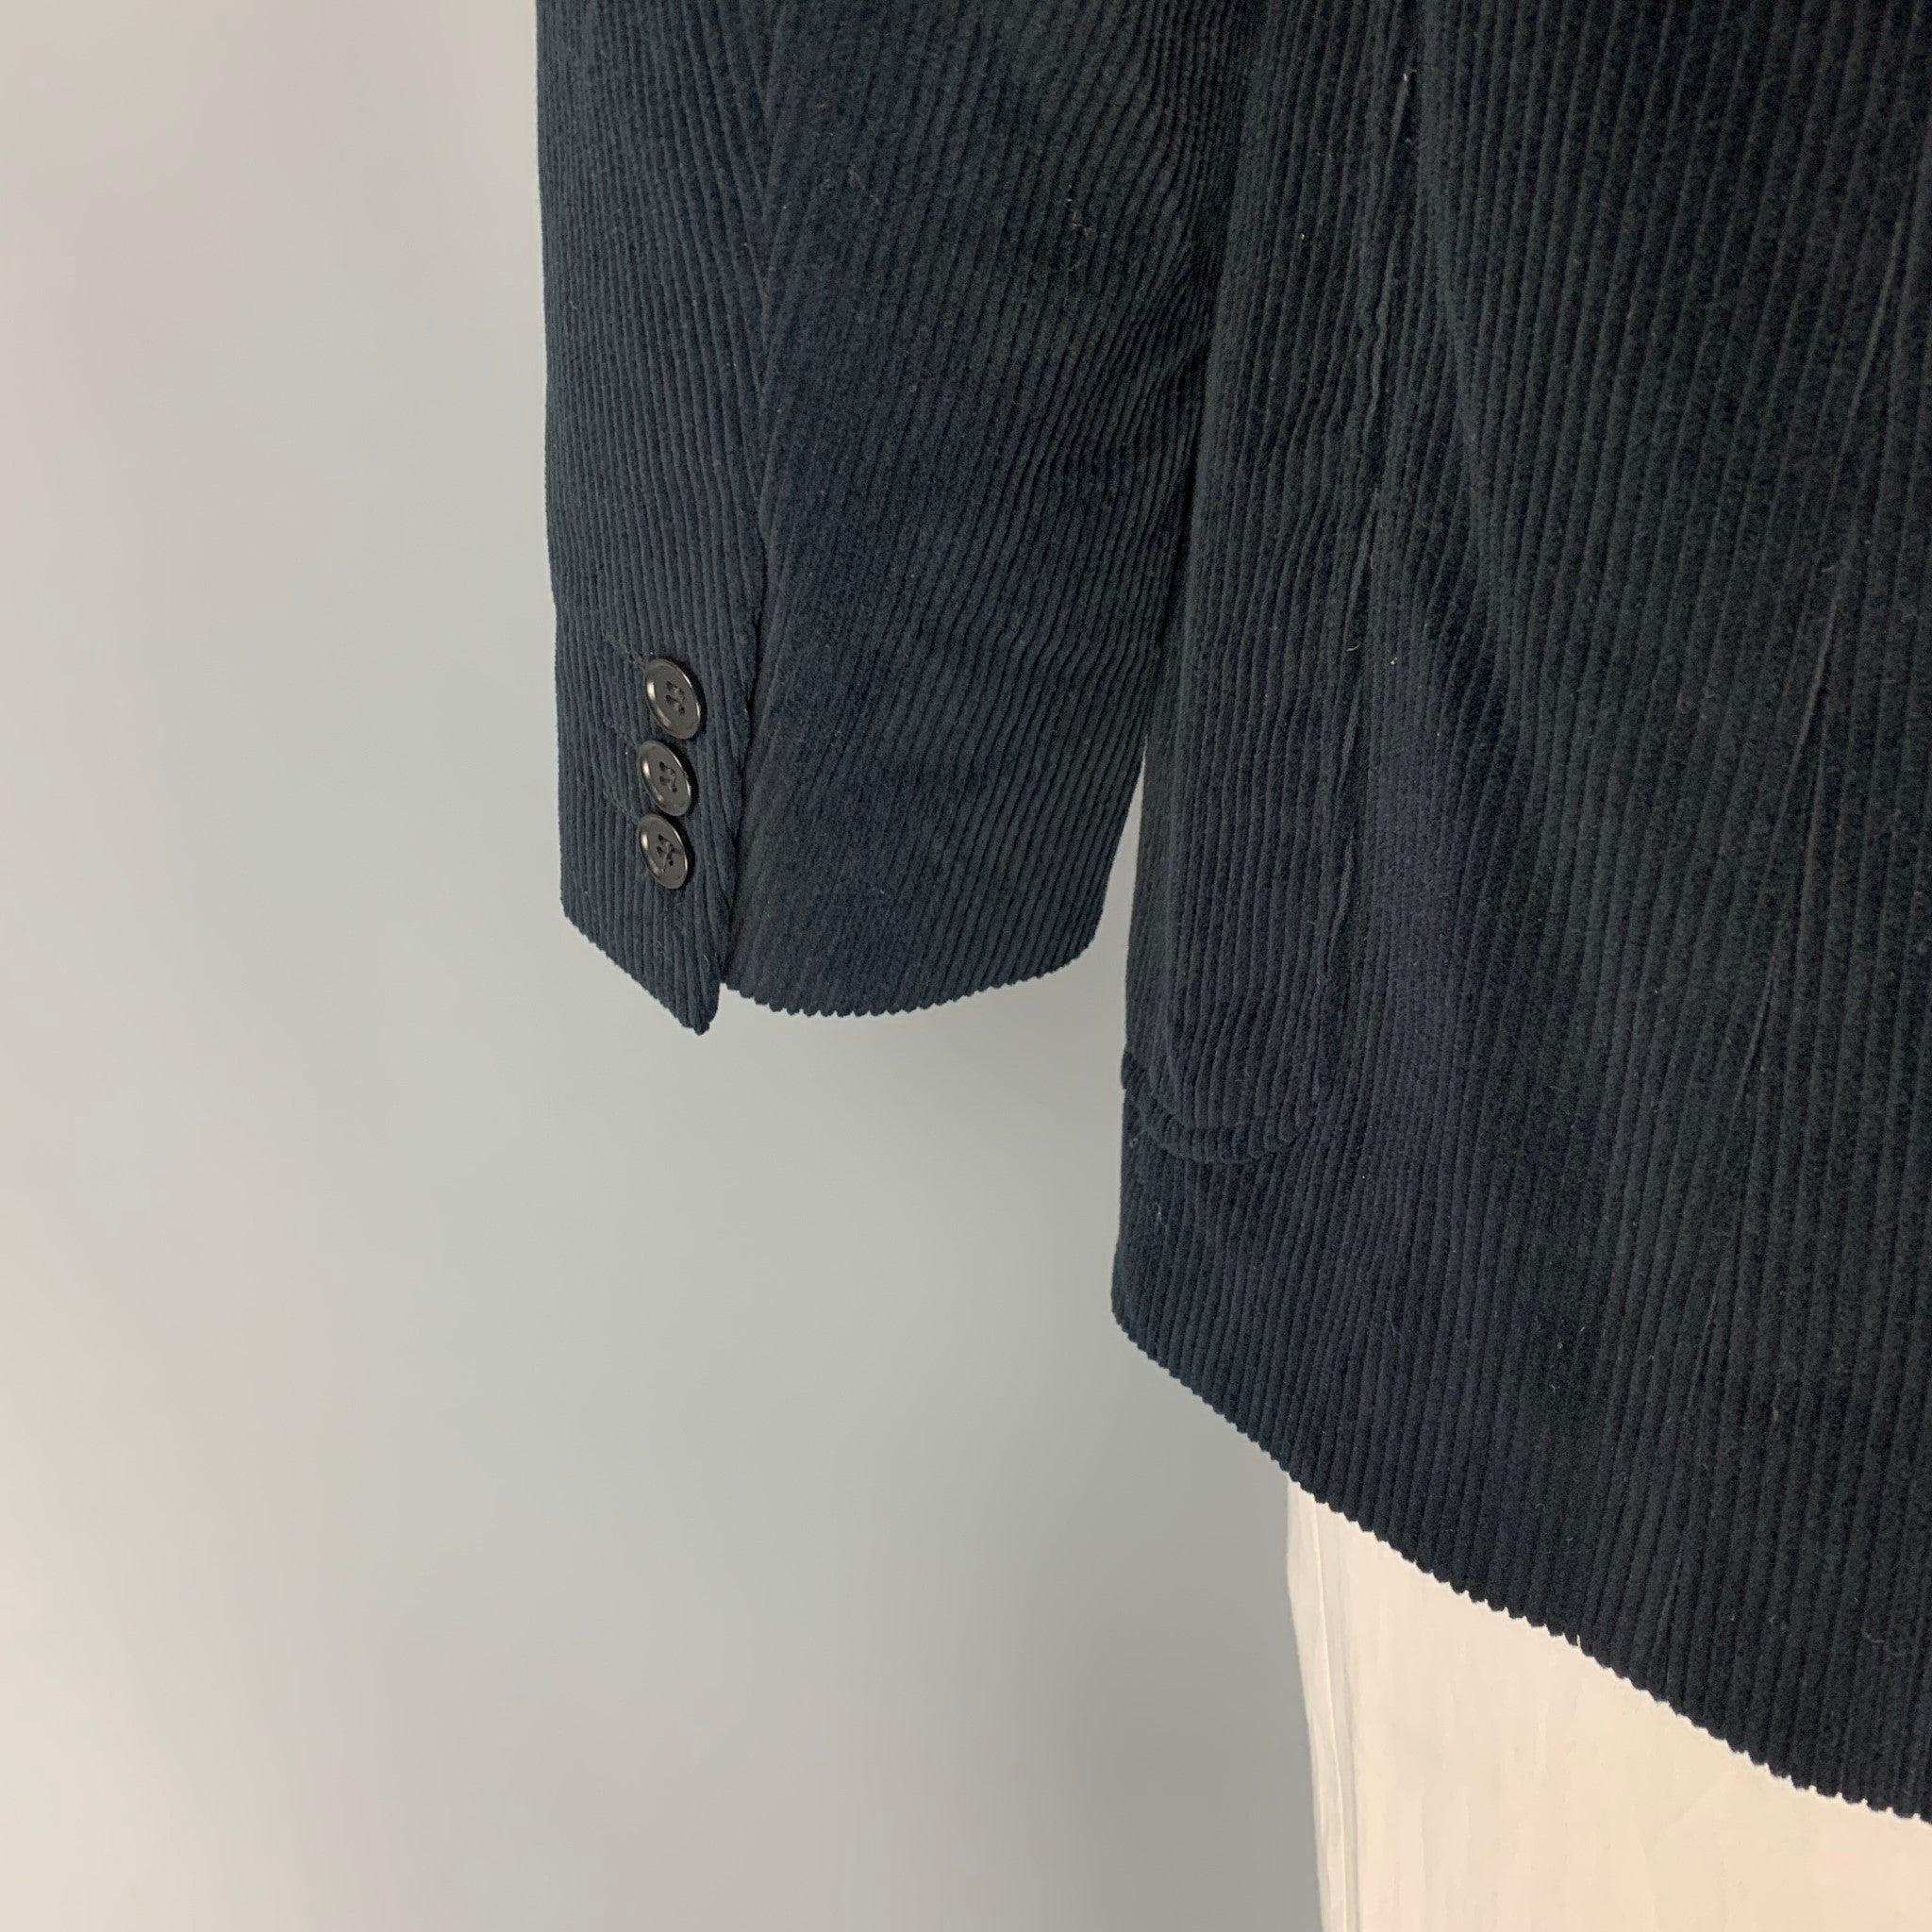 CALVIN KLEIN COLLECTION Size 44 Black Corduroy Cotton Sport Coat For Sale 1